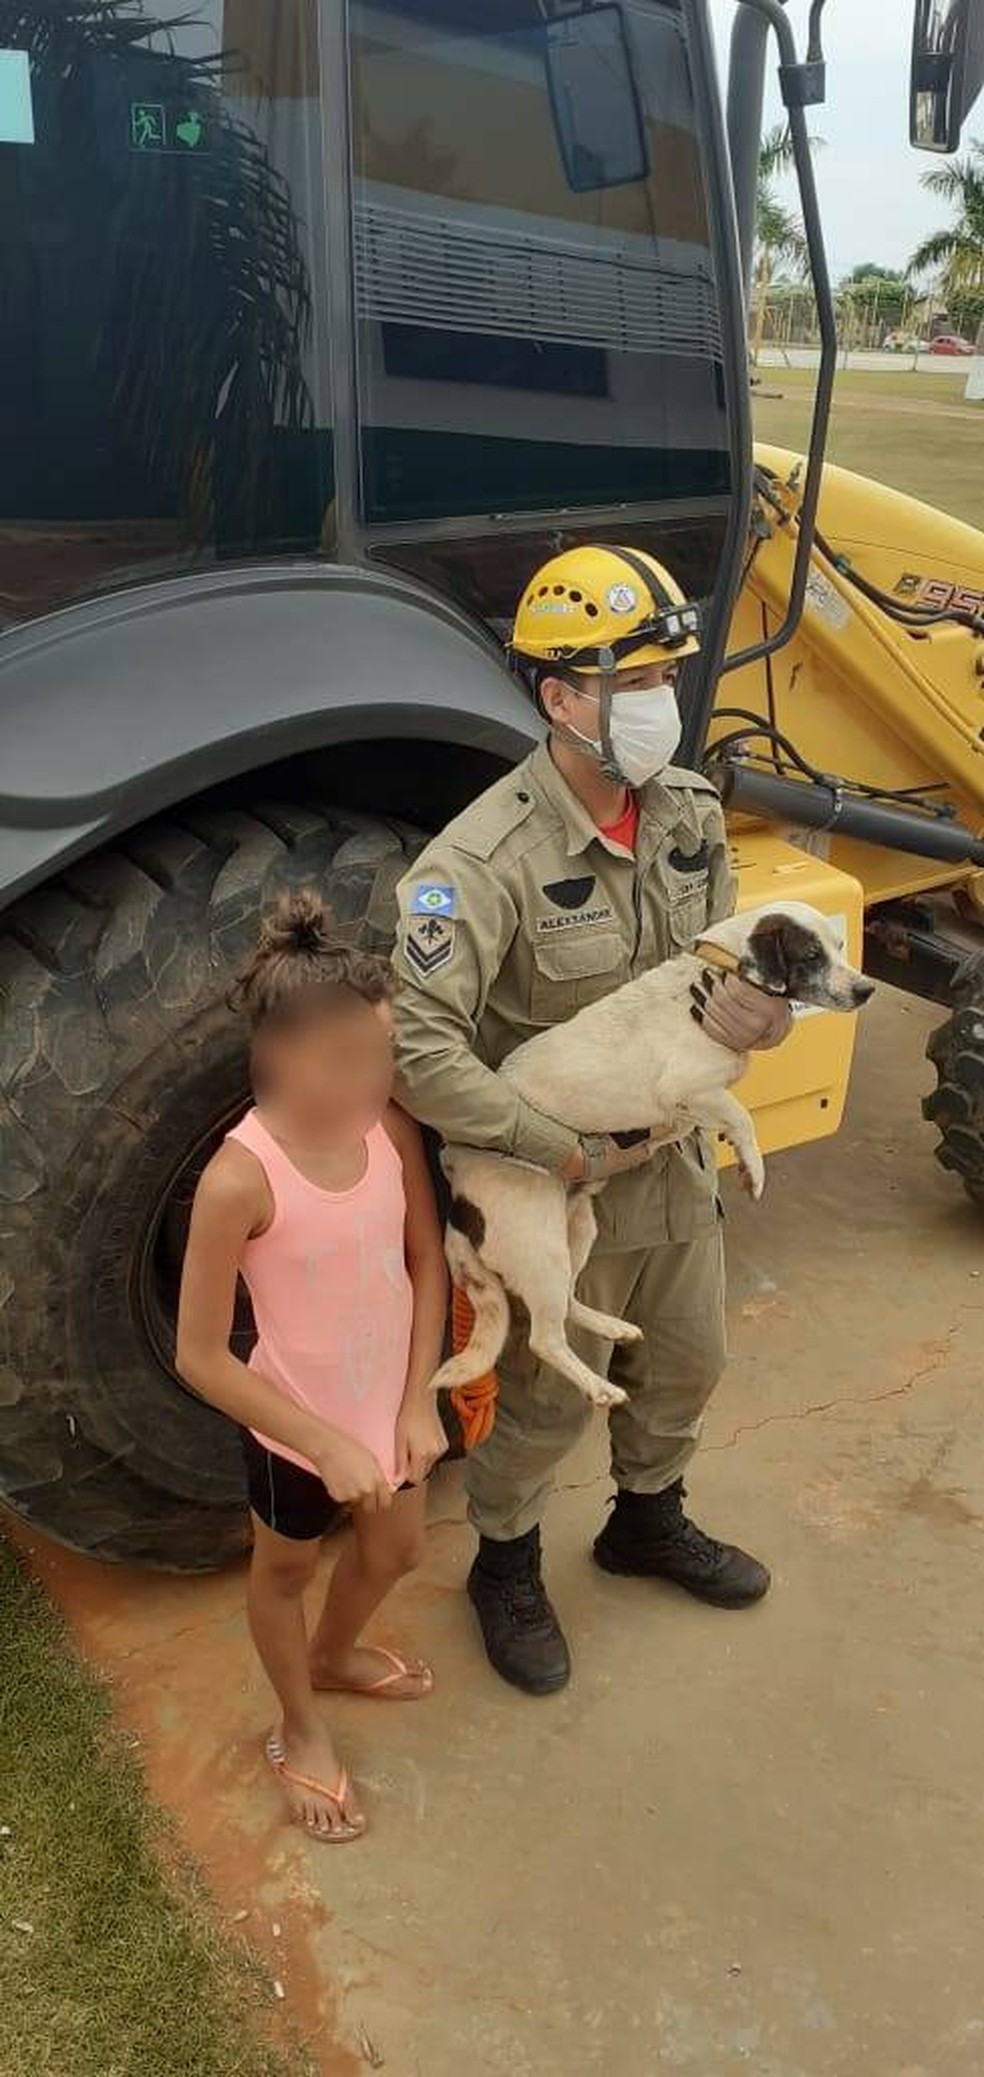 Cachorro foi resgatado por bombeiros depois de ficar preso debaixo de um continer neste domingo (16) em Lucas do Rio Verde  Foto: Corpo de Bombeiros de Lucas do Rio Verde